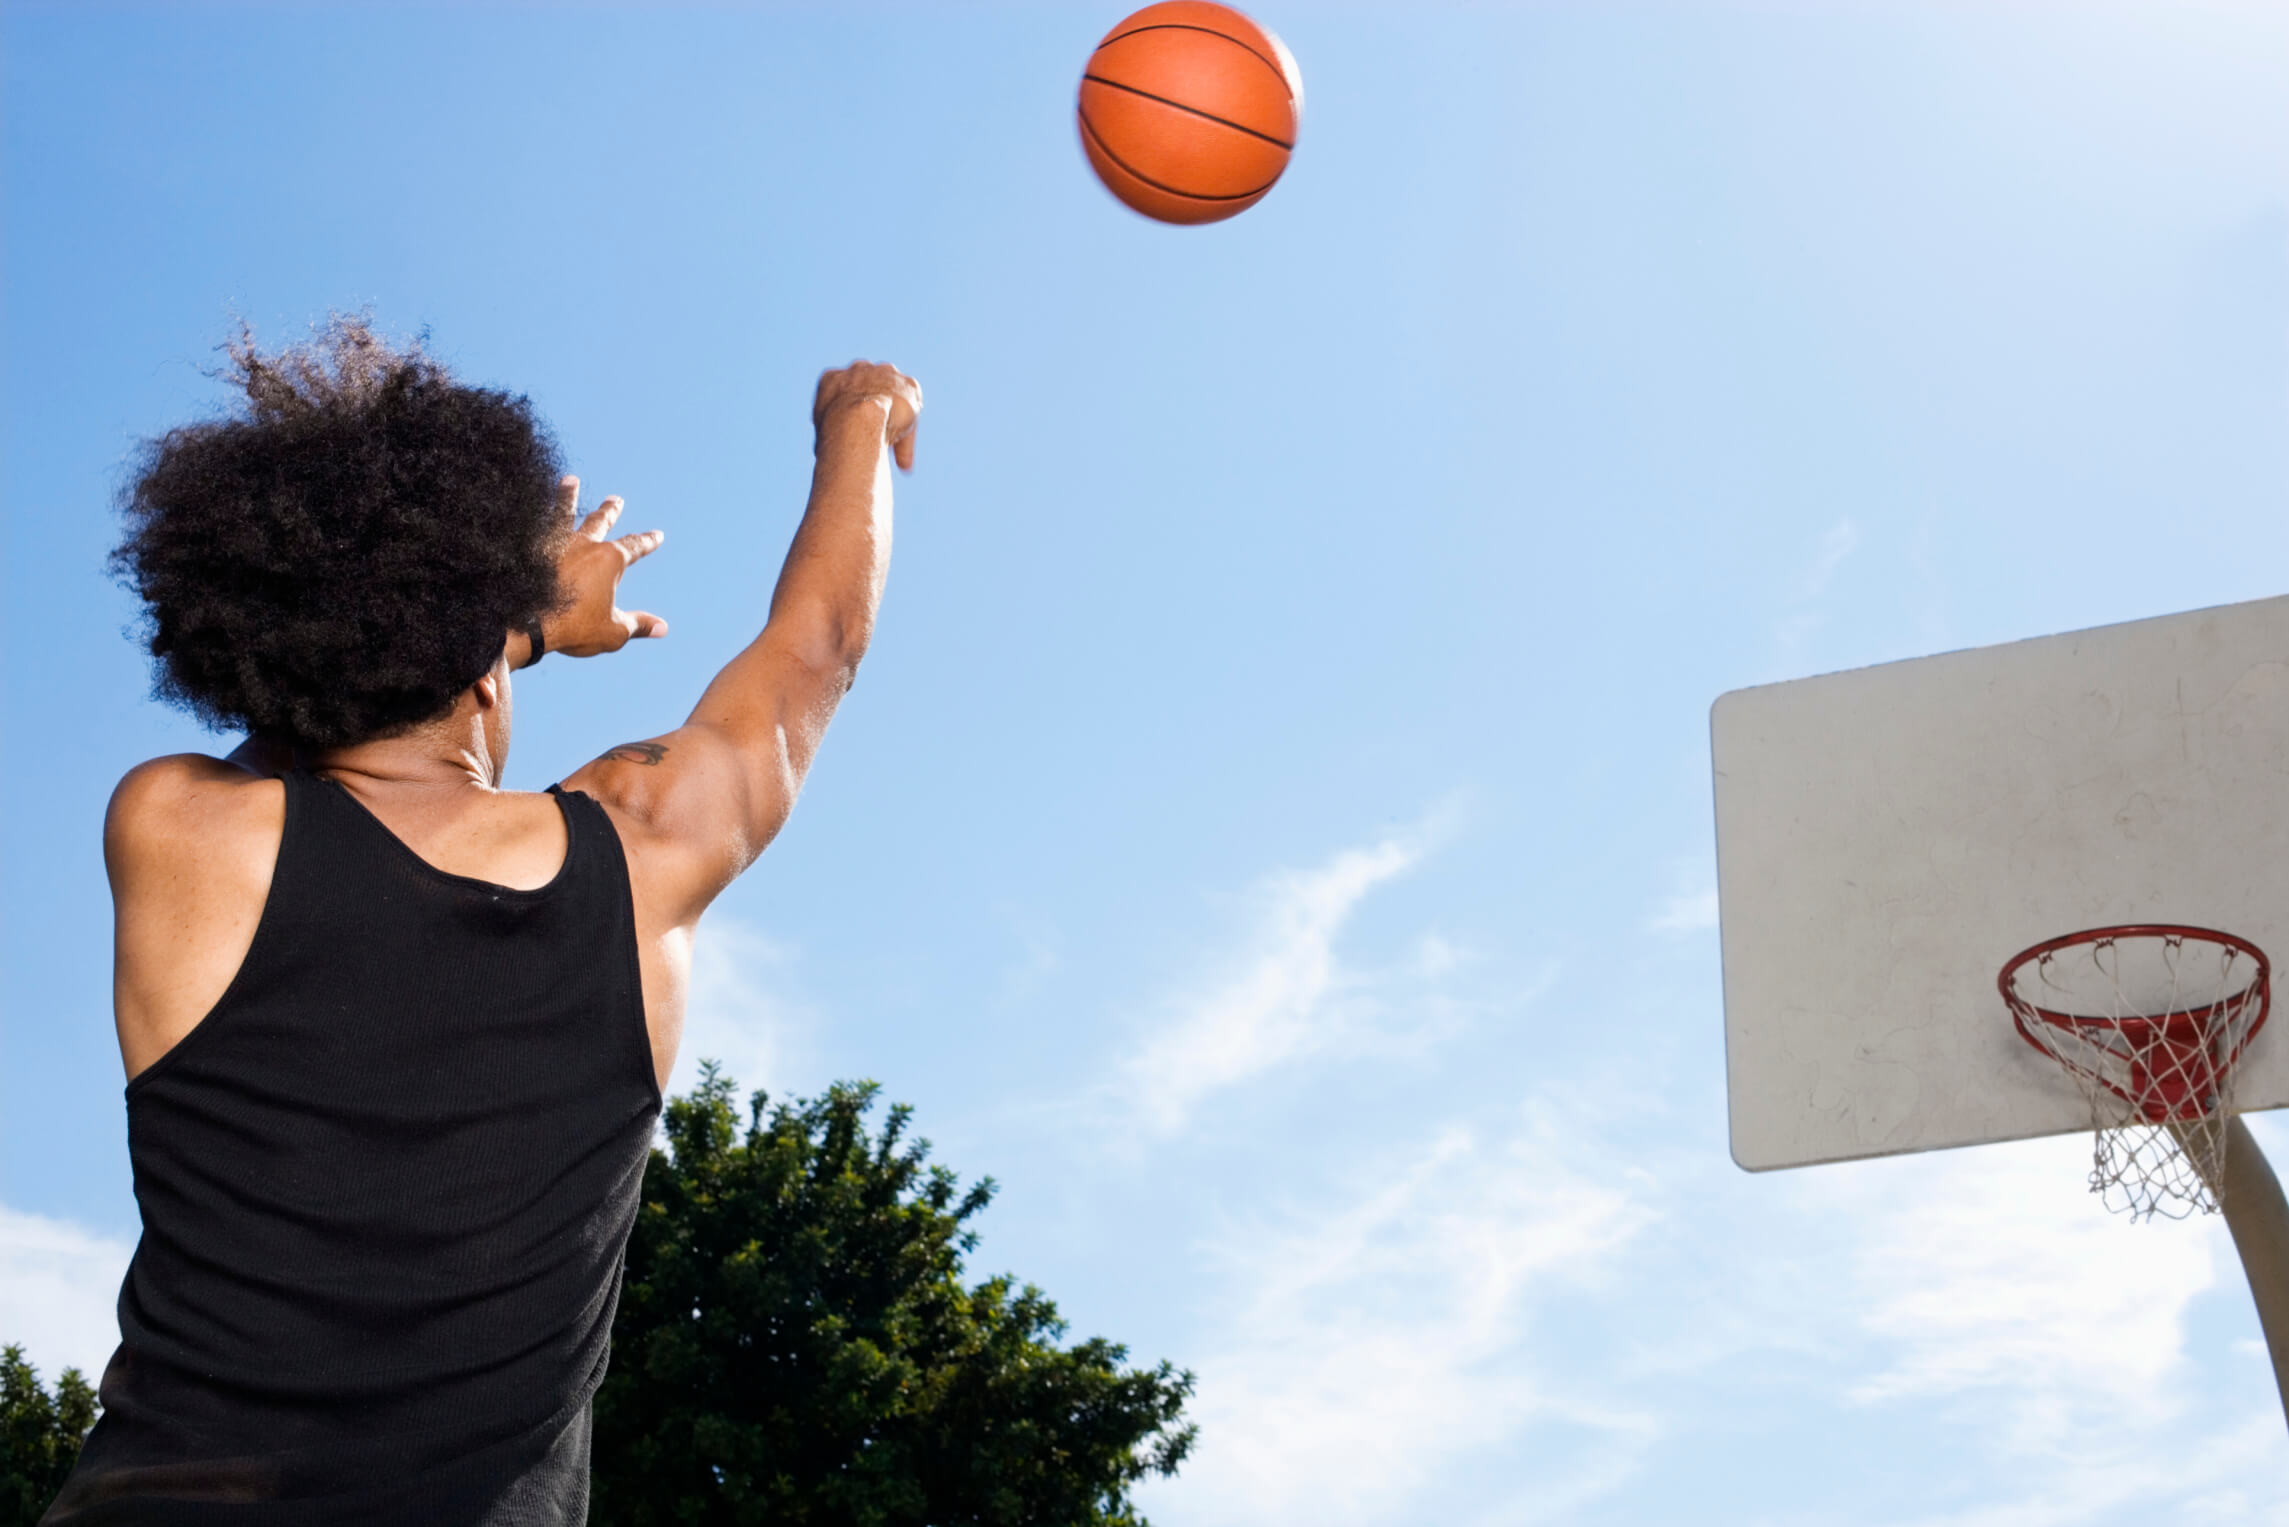 Kỹ thuật ném bóng rổ 2 bước là gì?